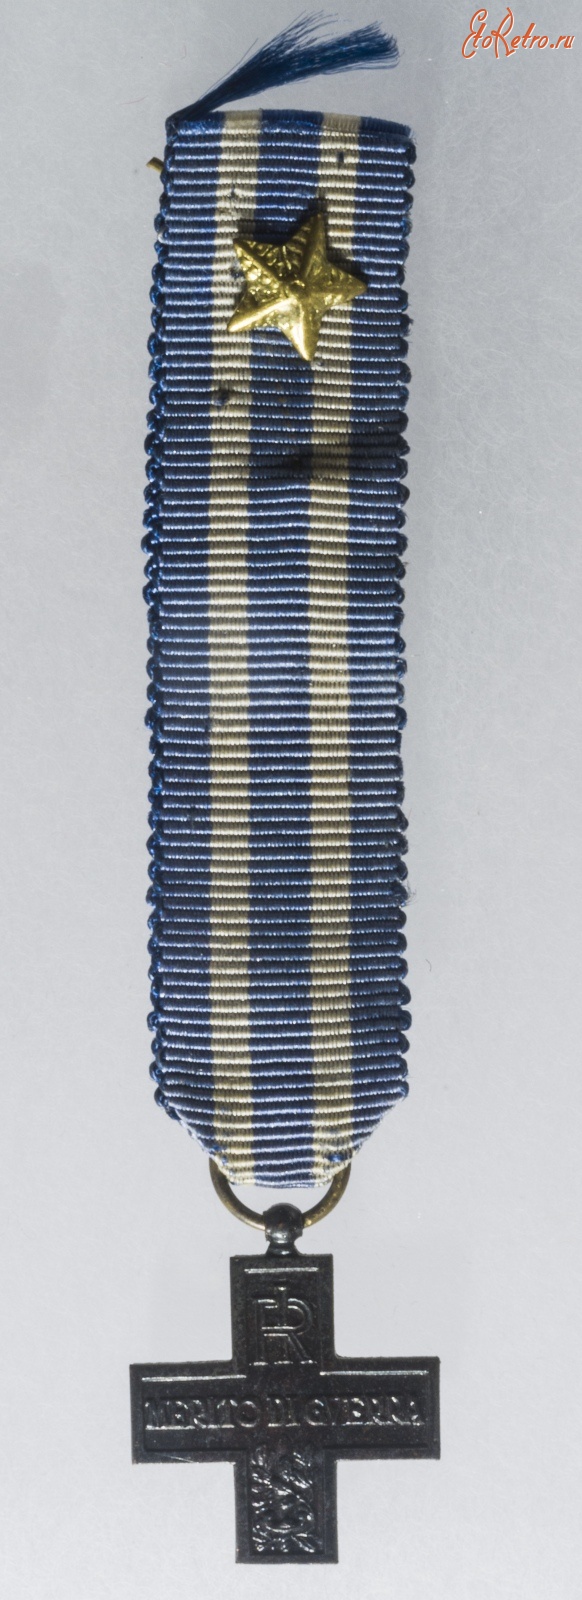 Медали, ордена, значки - Серебряный Крест за воинскую доблесть. Италия, 1915